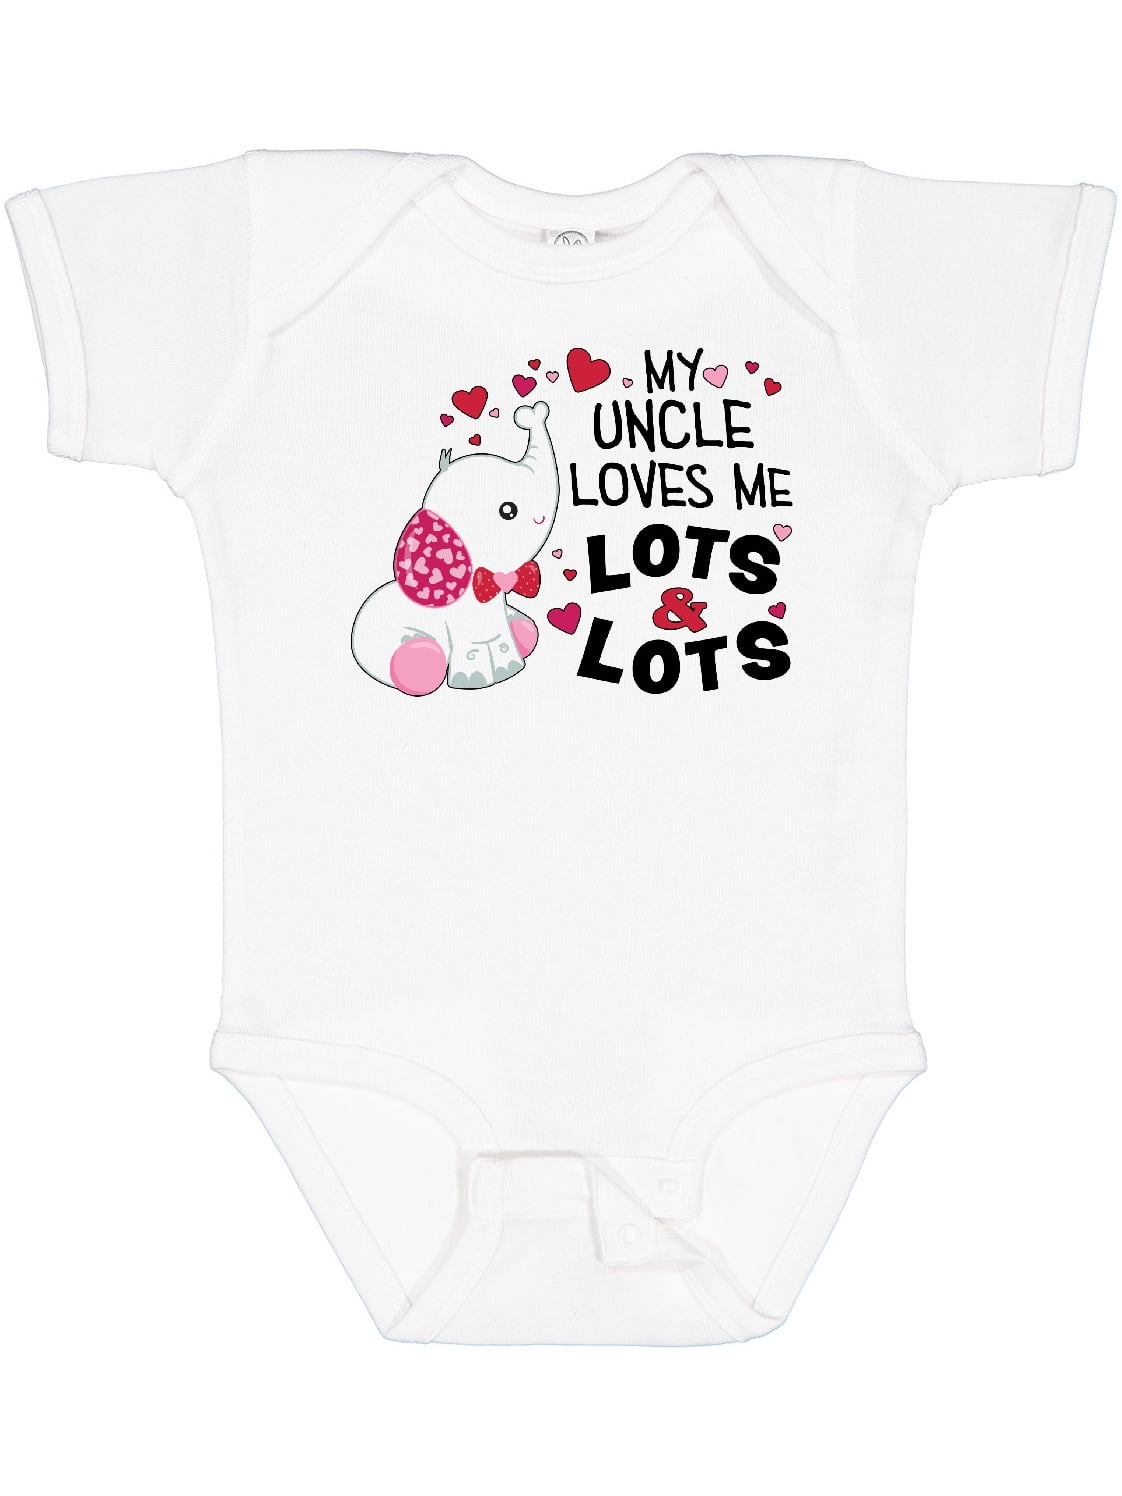 Details about   Daddy's Little Wingman Daddy's Best Friend Single Parent Love  Infant Bodysuit